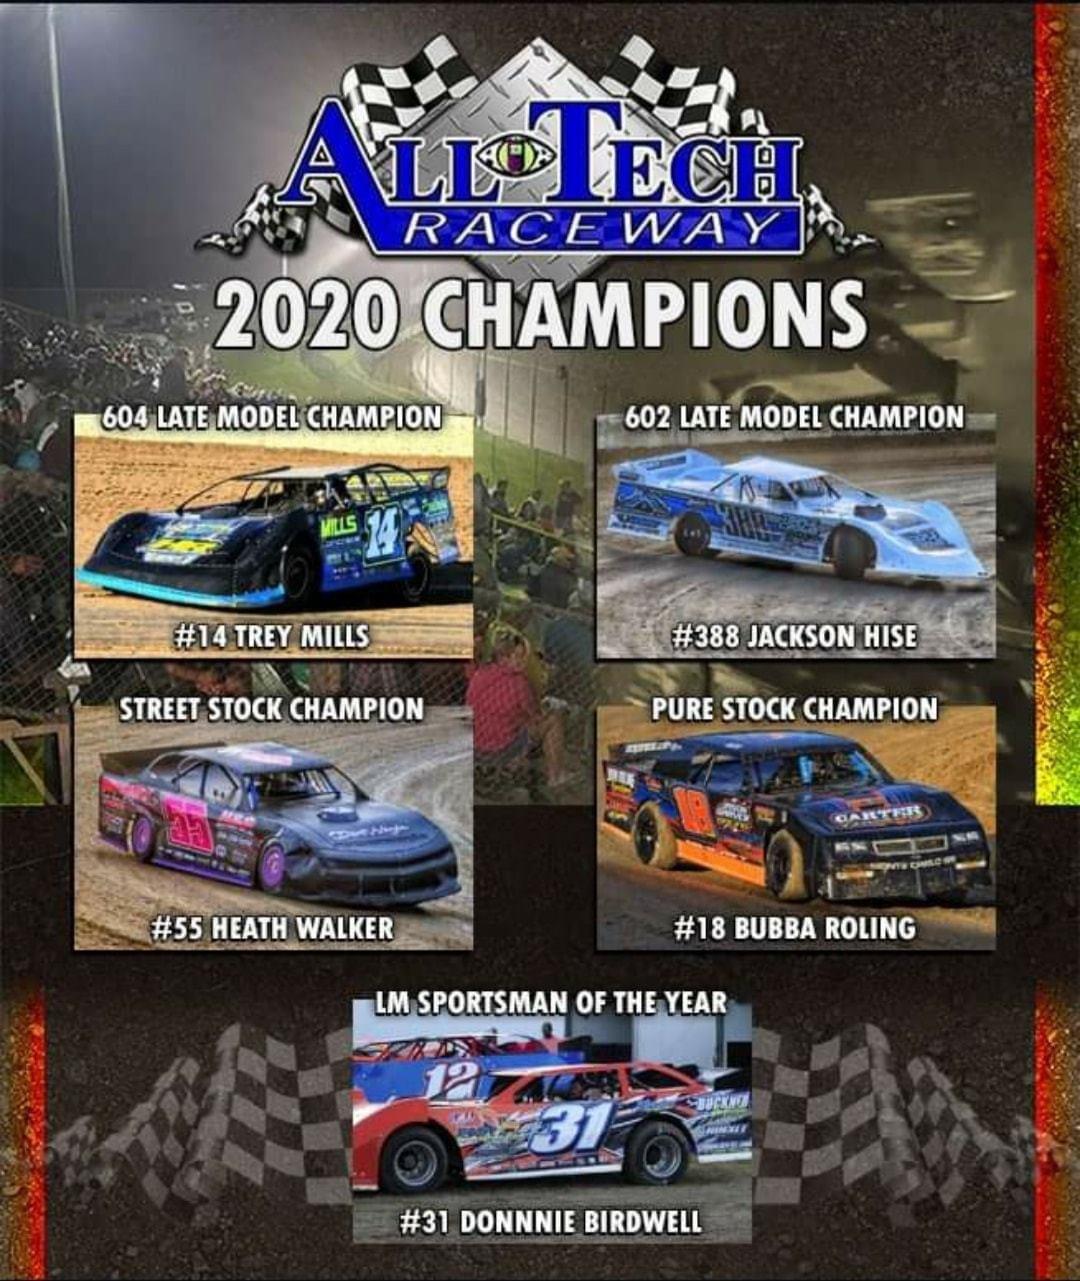 AllTech Raceway Lake City, Florida